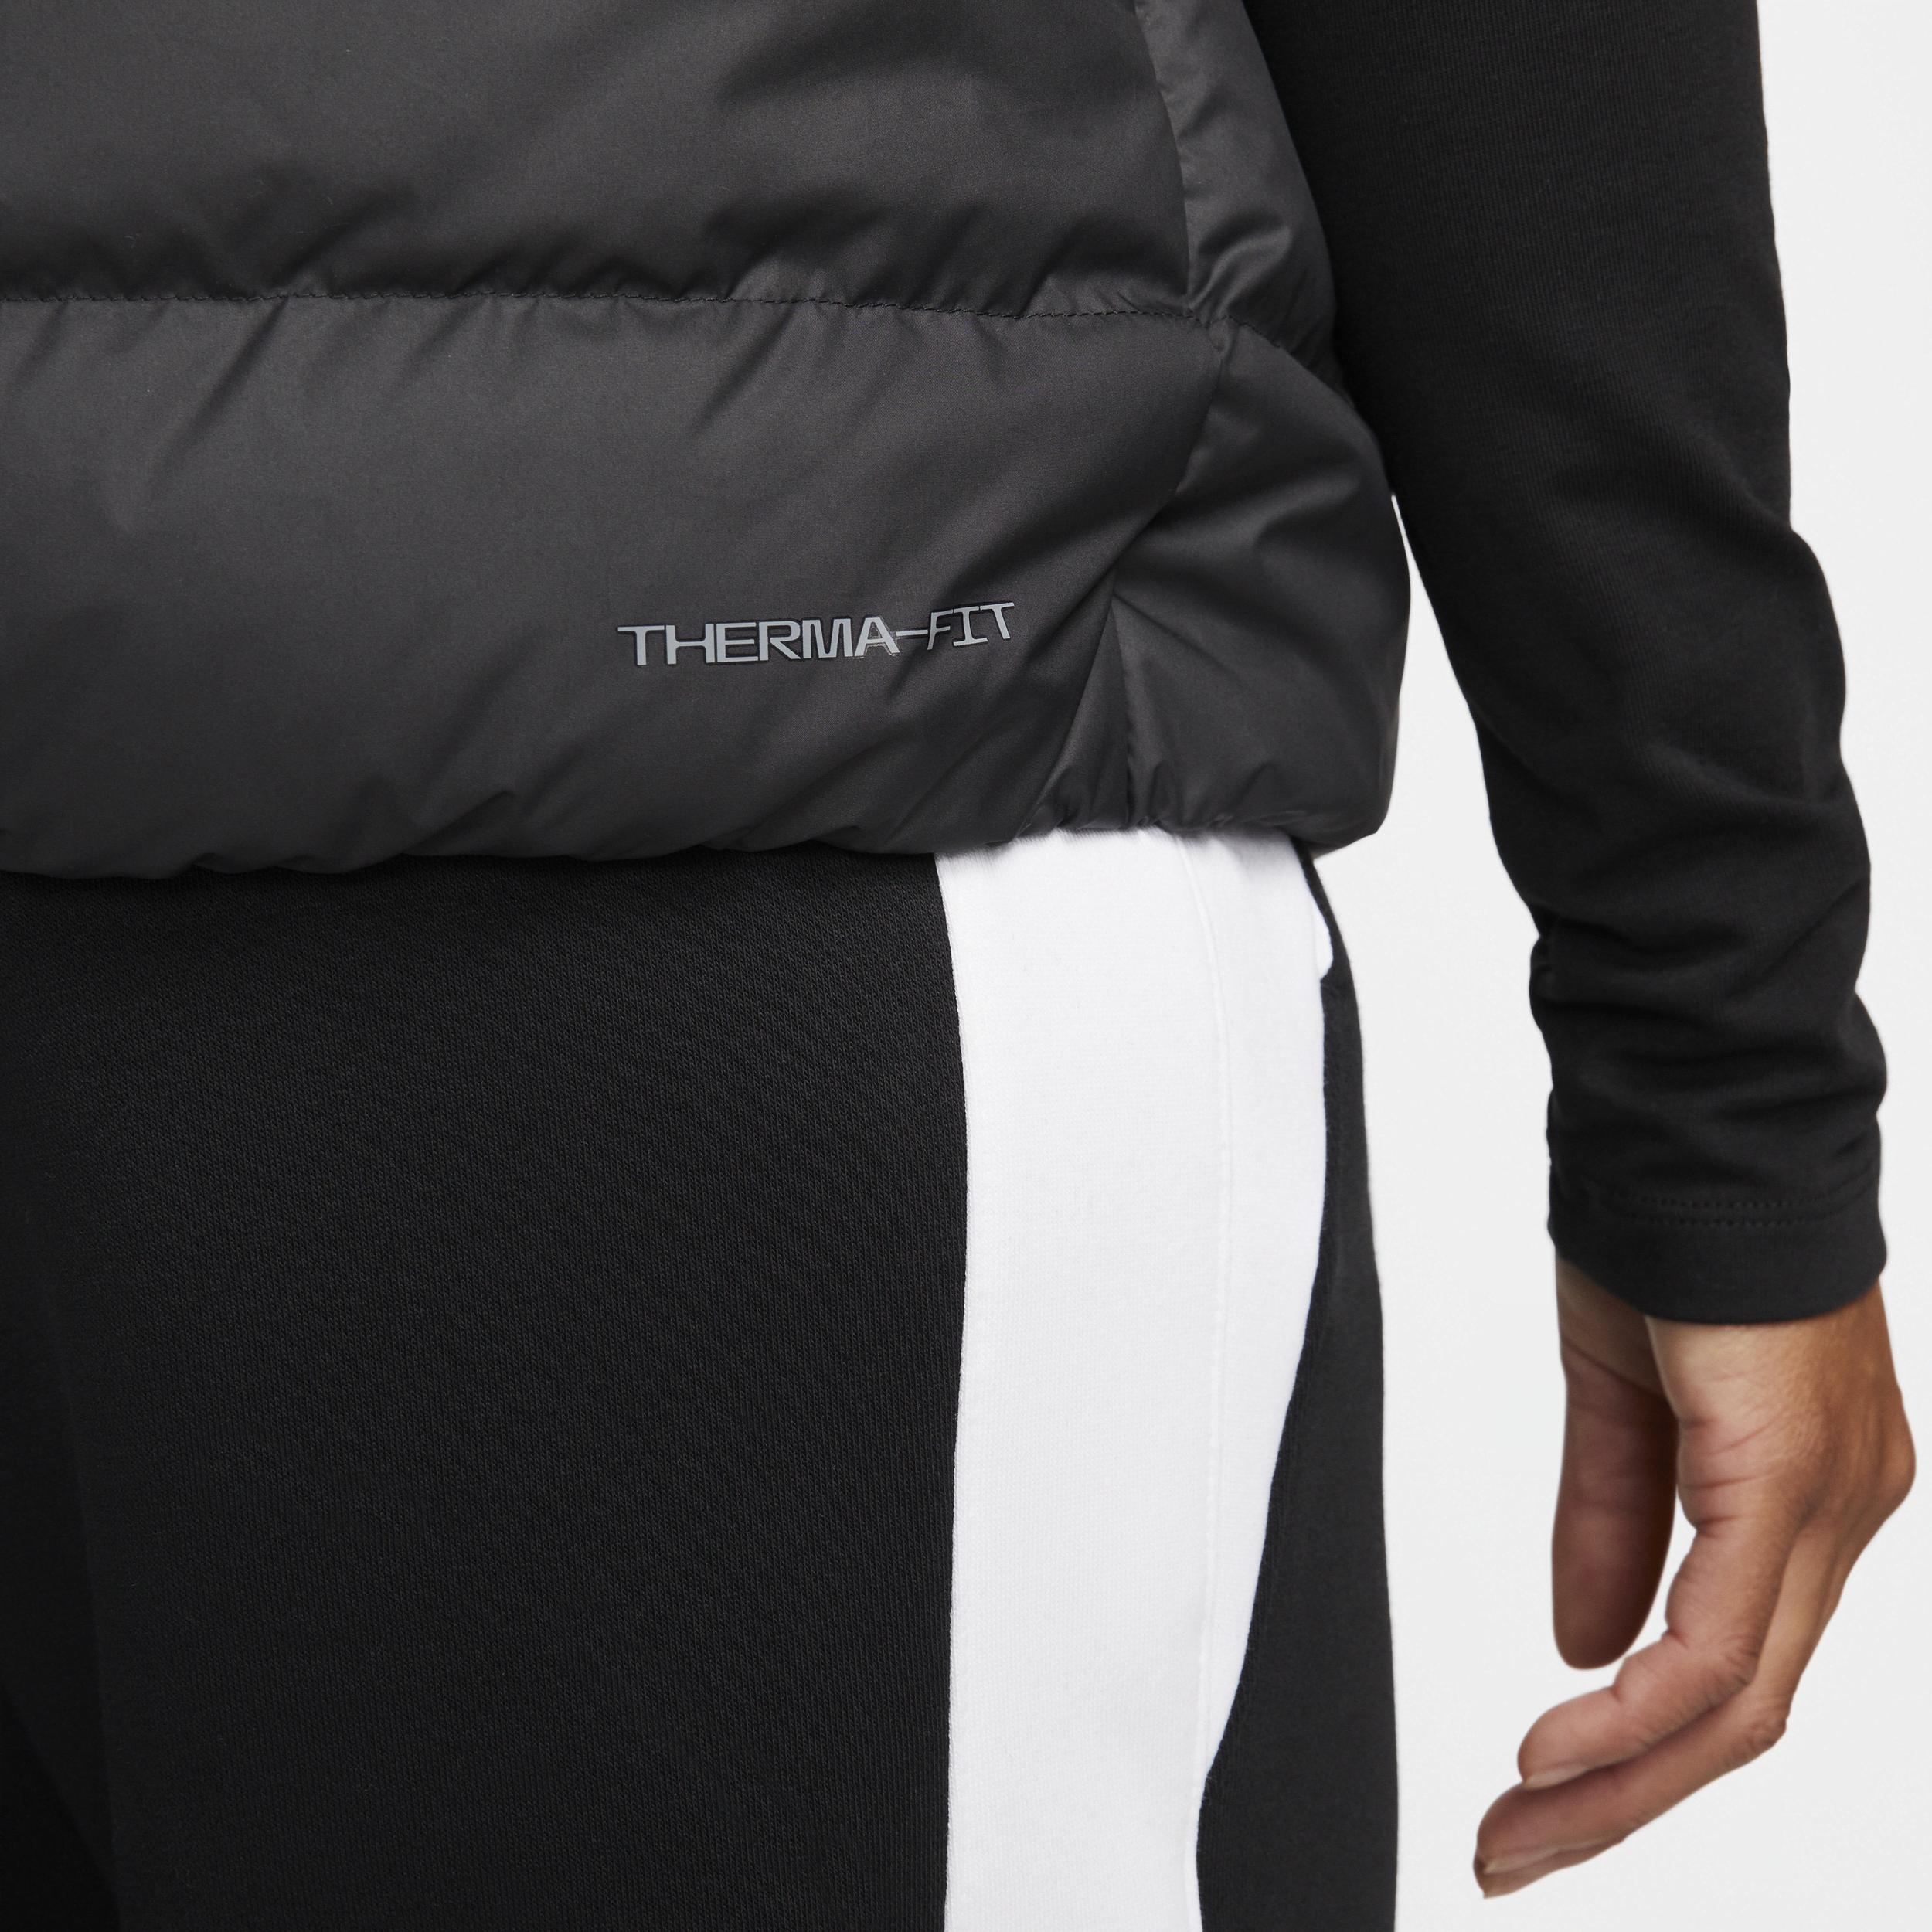 Nike Sportswear Therma-fit Windrunner Down Vest in Black | Lyst